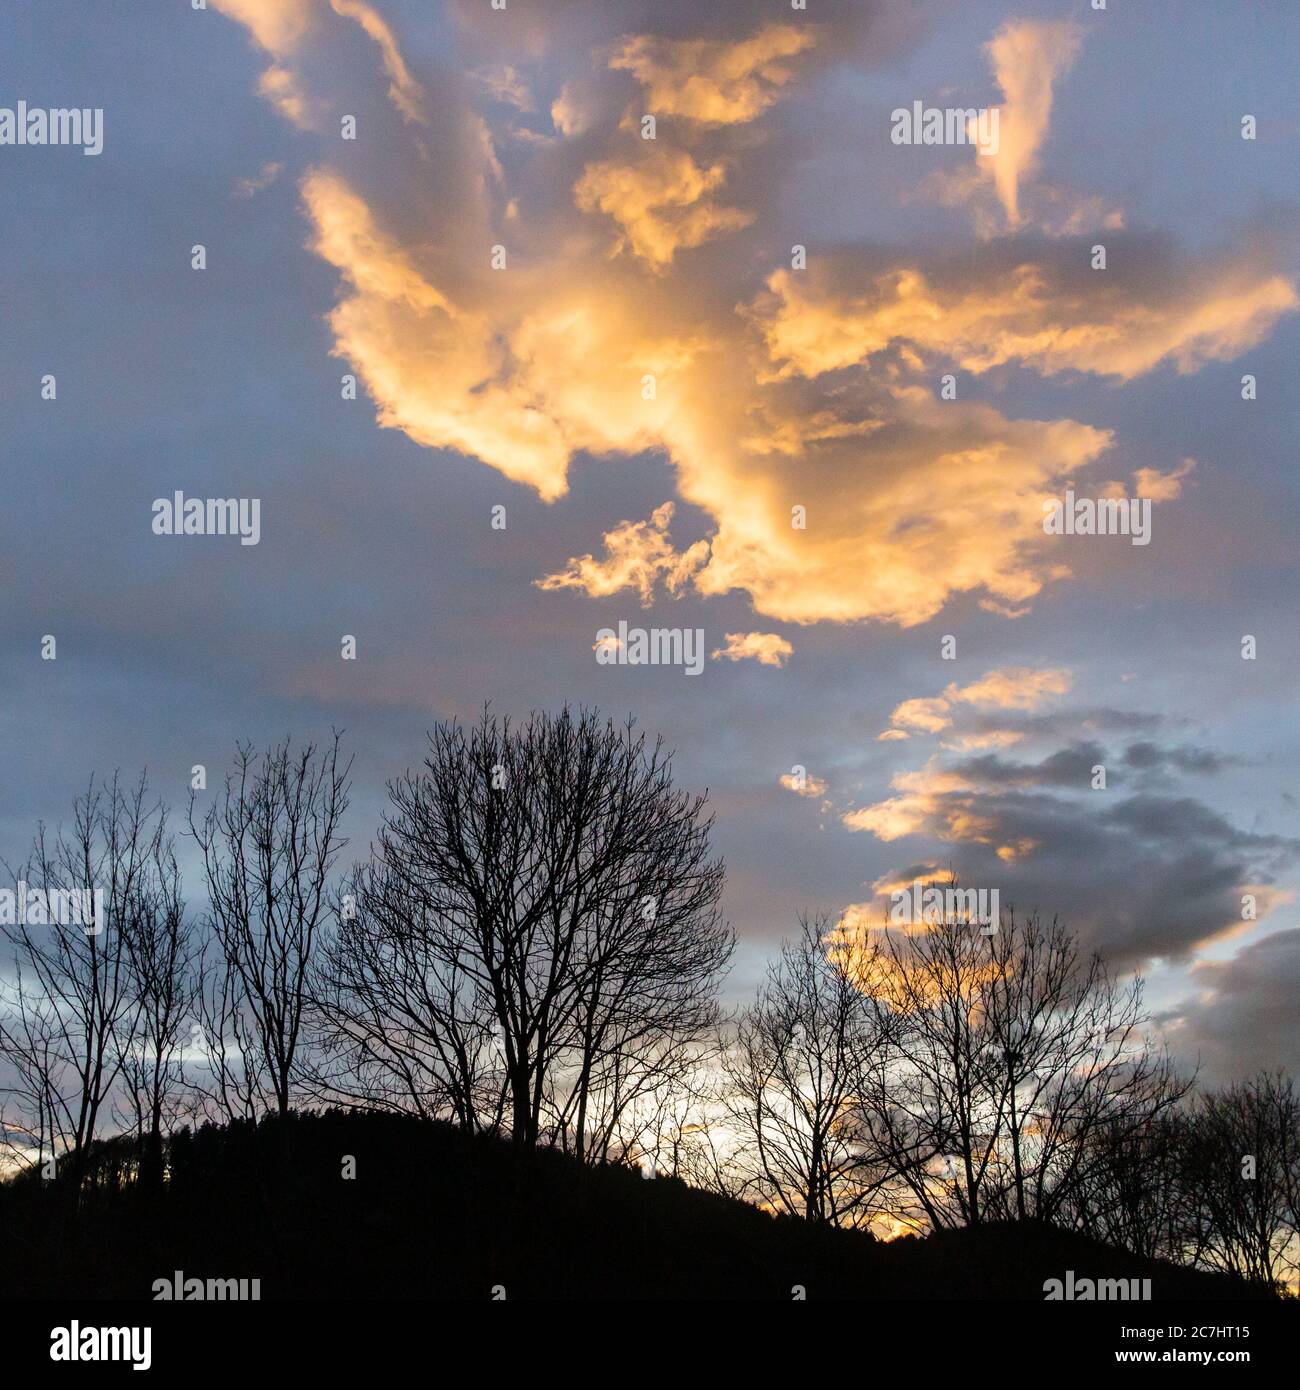 Nuvola illuminata nella luce della sera, che sembra un uccello di preda in un'immersione, sulla sagoma degli alberi (formato 1: 1) Foto Stock